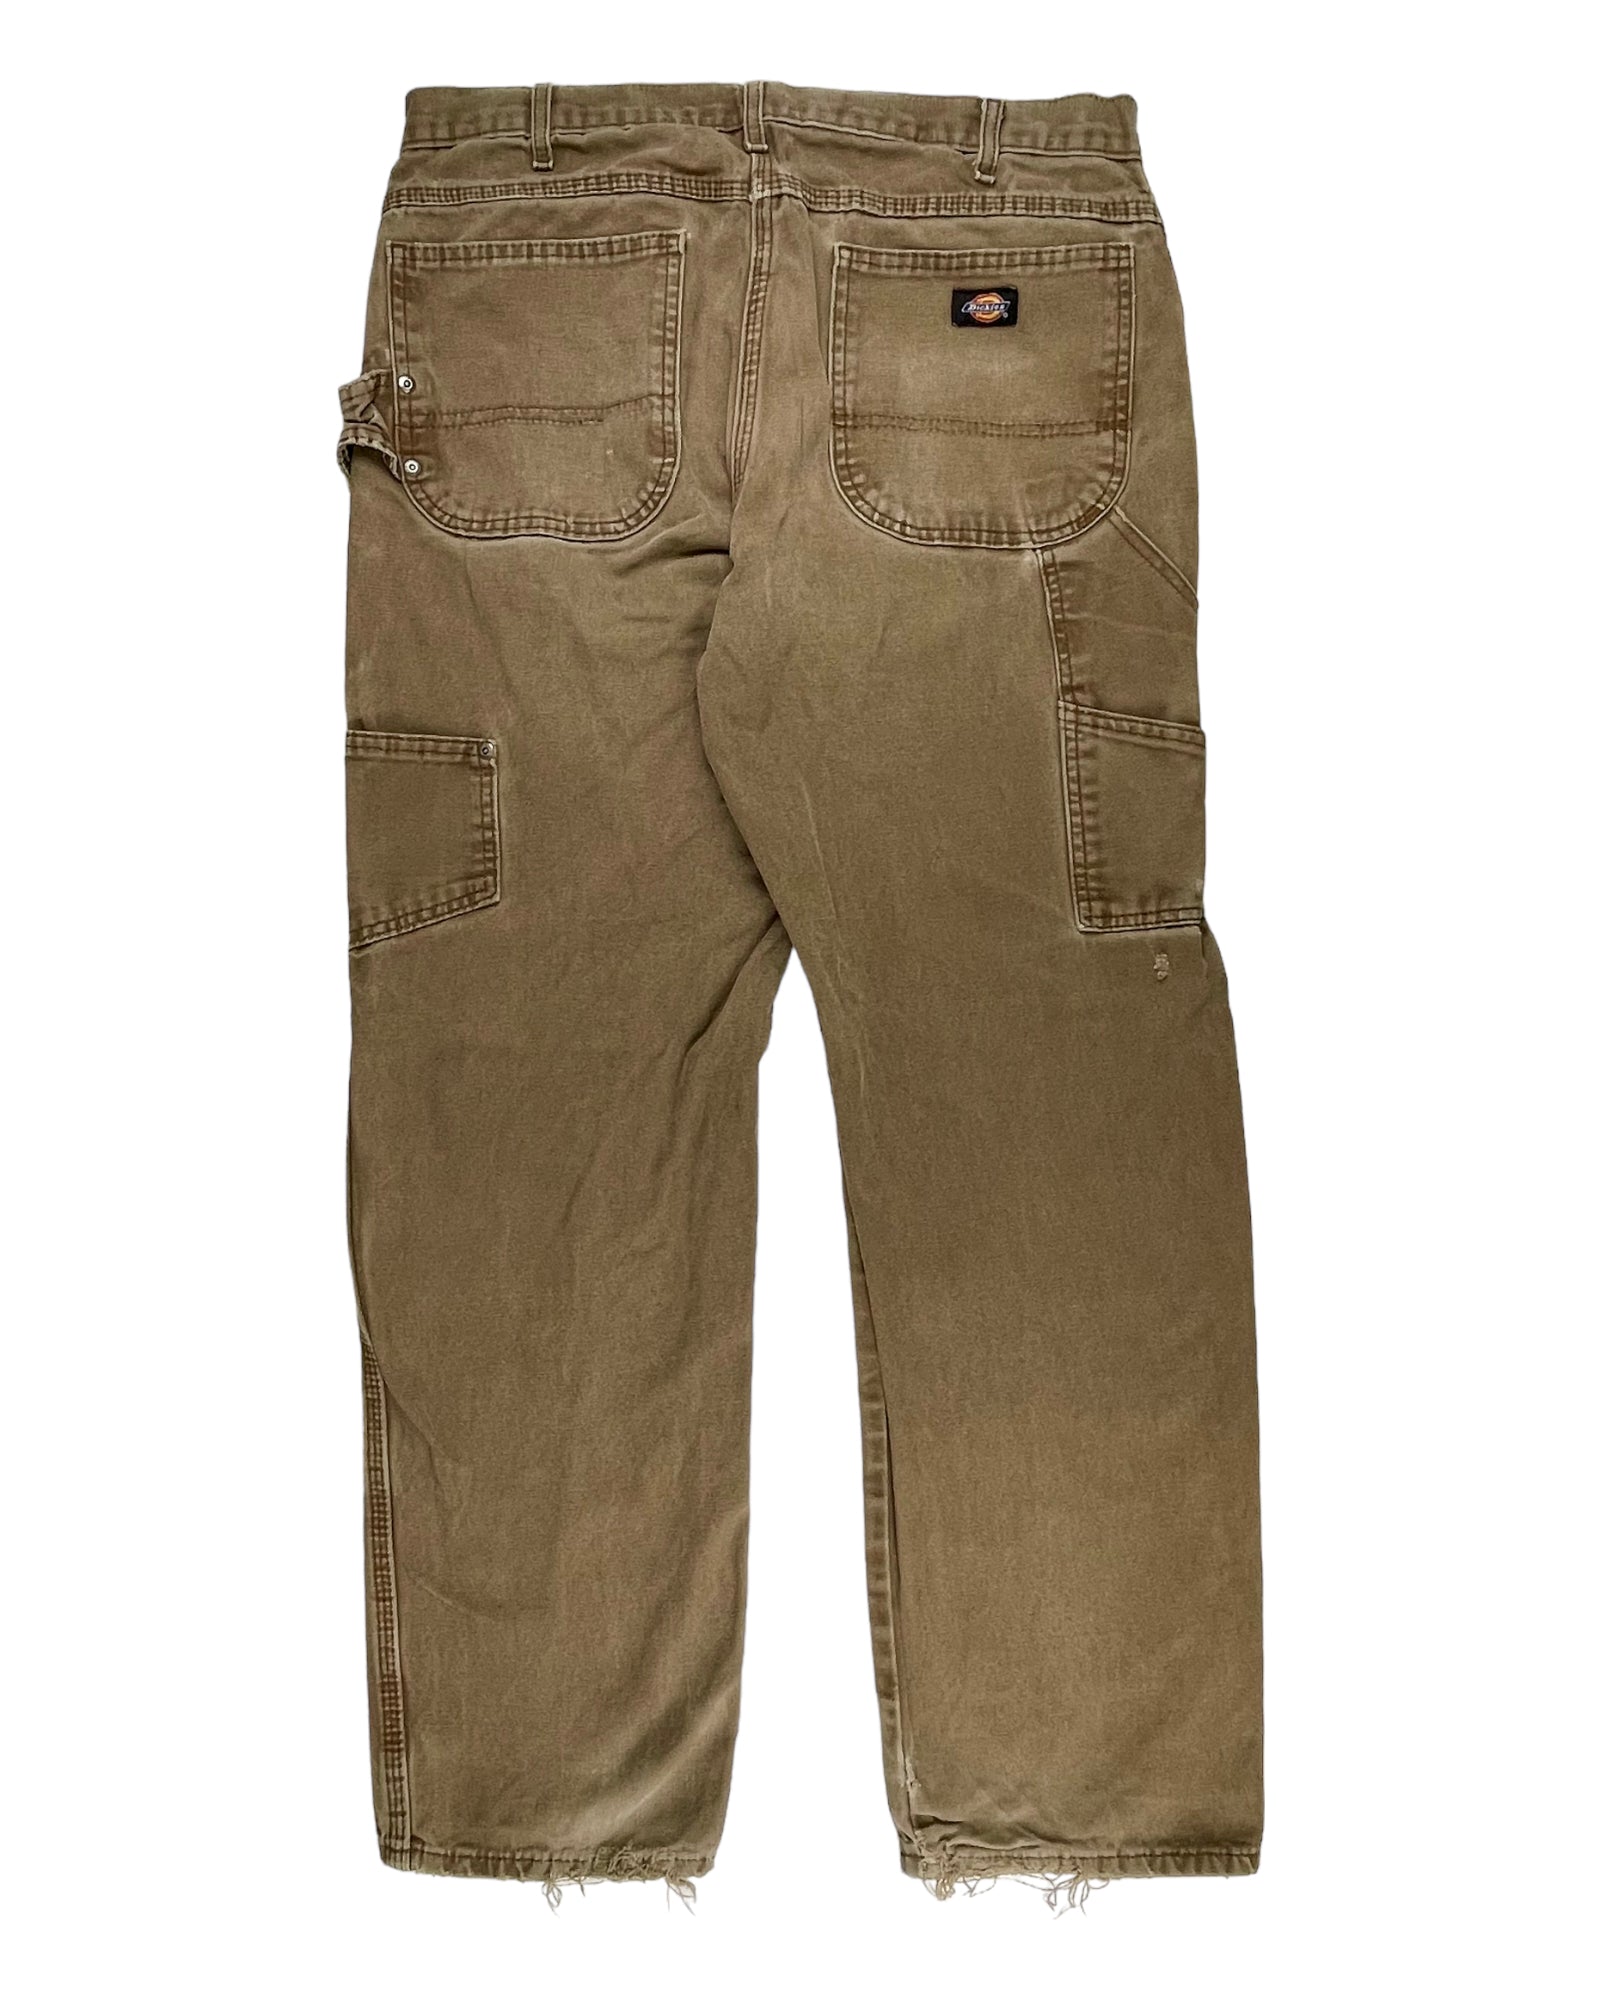 Vintage Dickies Workwear Pants